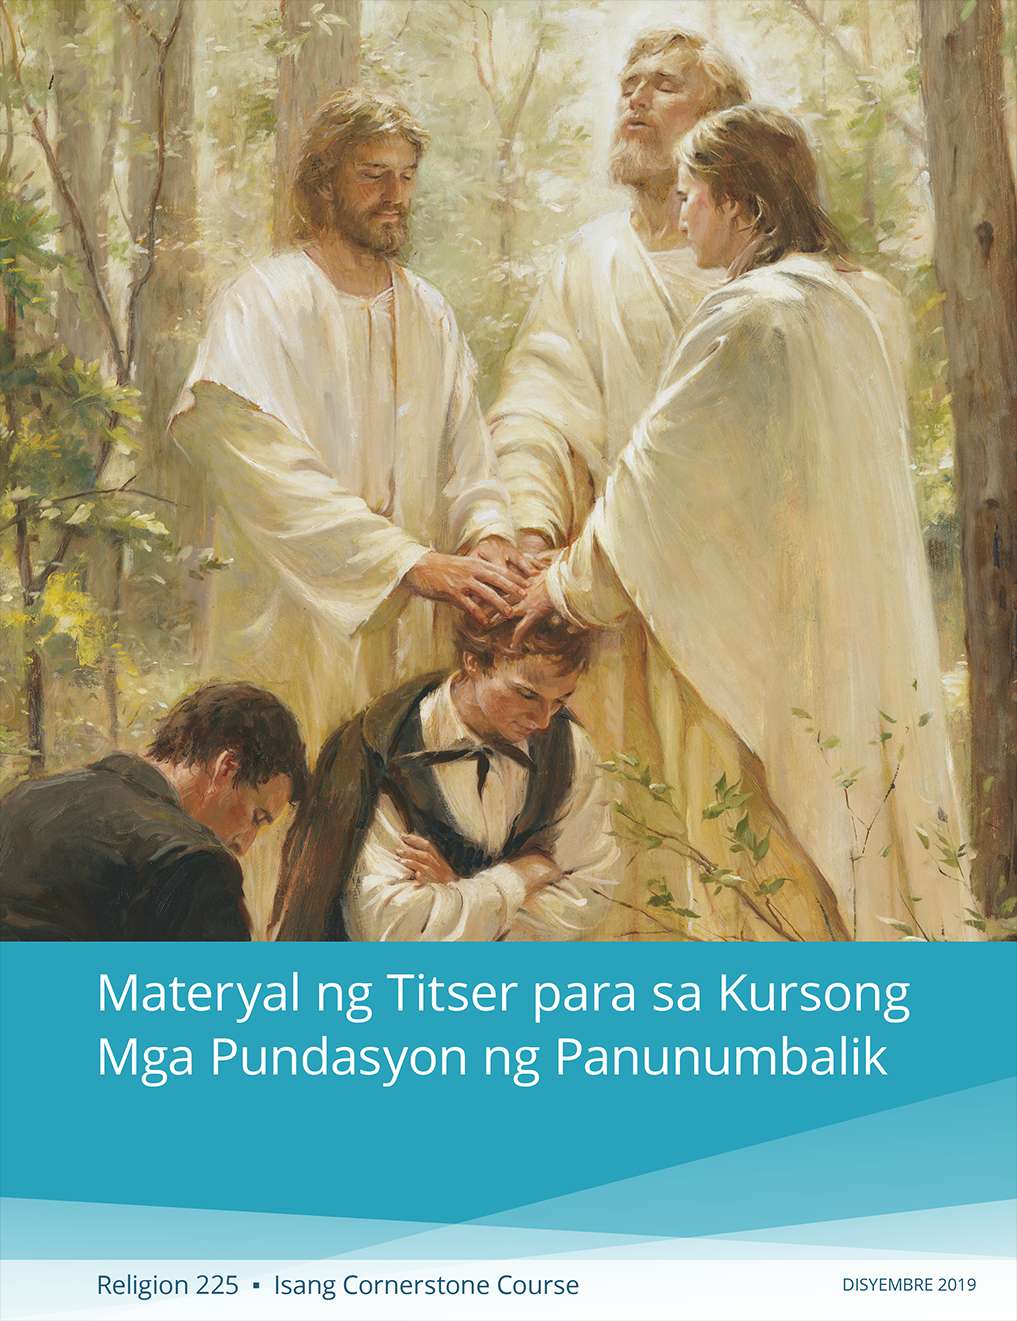 Materyal ng Titser para sa Kursong Mga Pundasyon ng Panunumbalik (Religion 225)